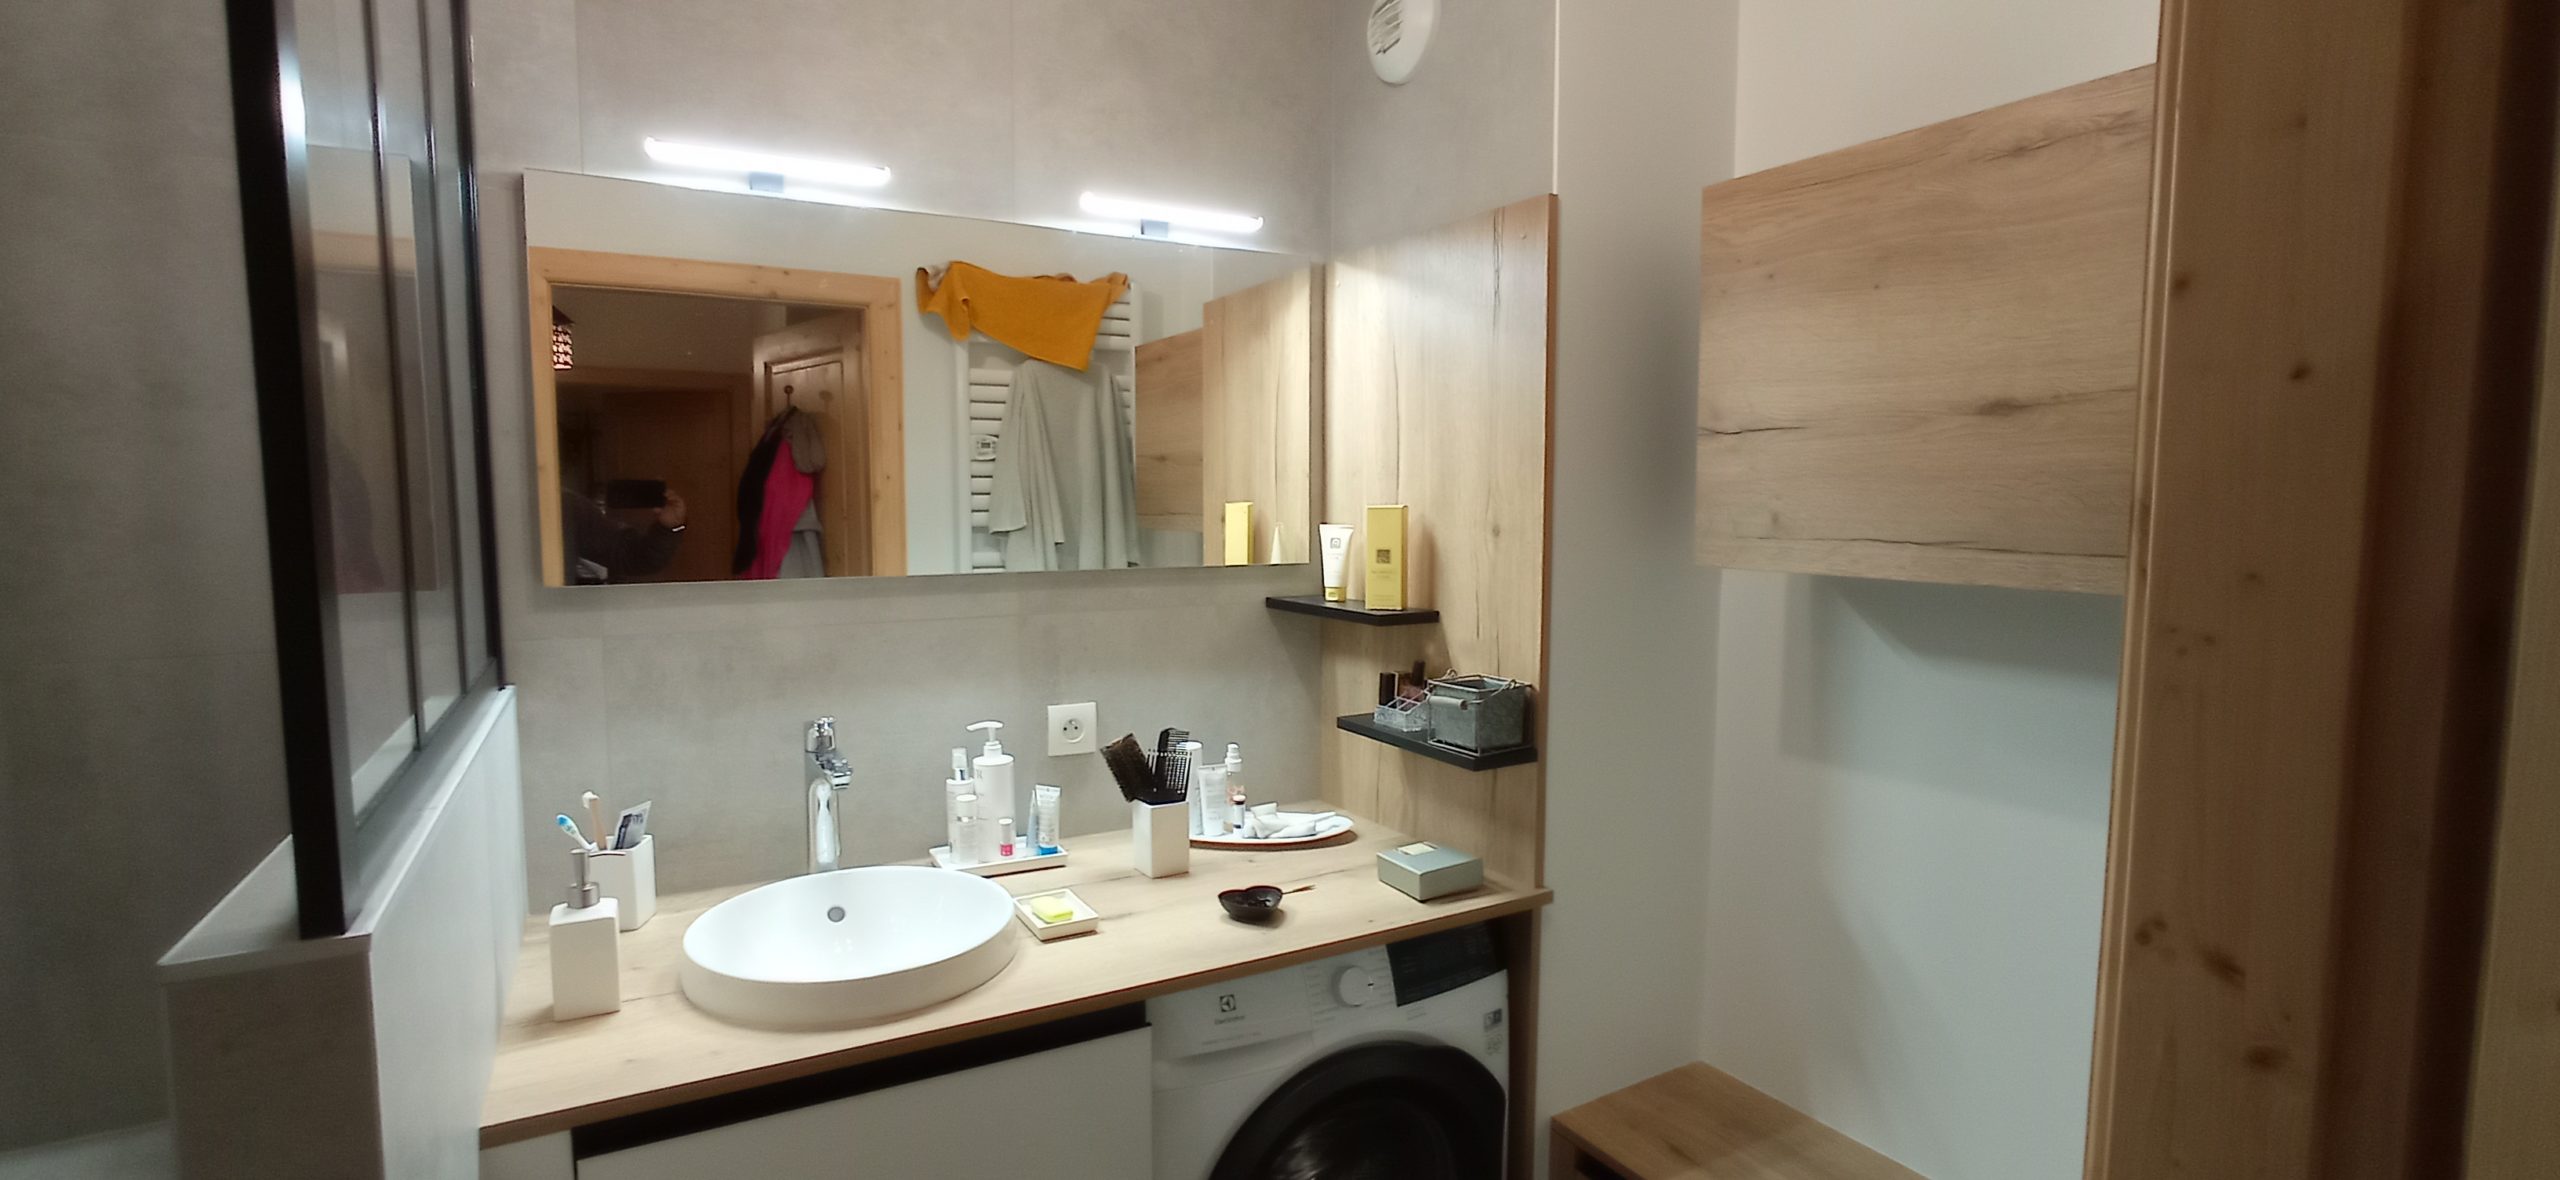 Lire la suite à propos de l’article Rénovation de salle de bain à Doussard en Haute-Savoie